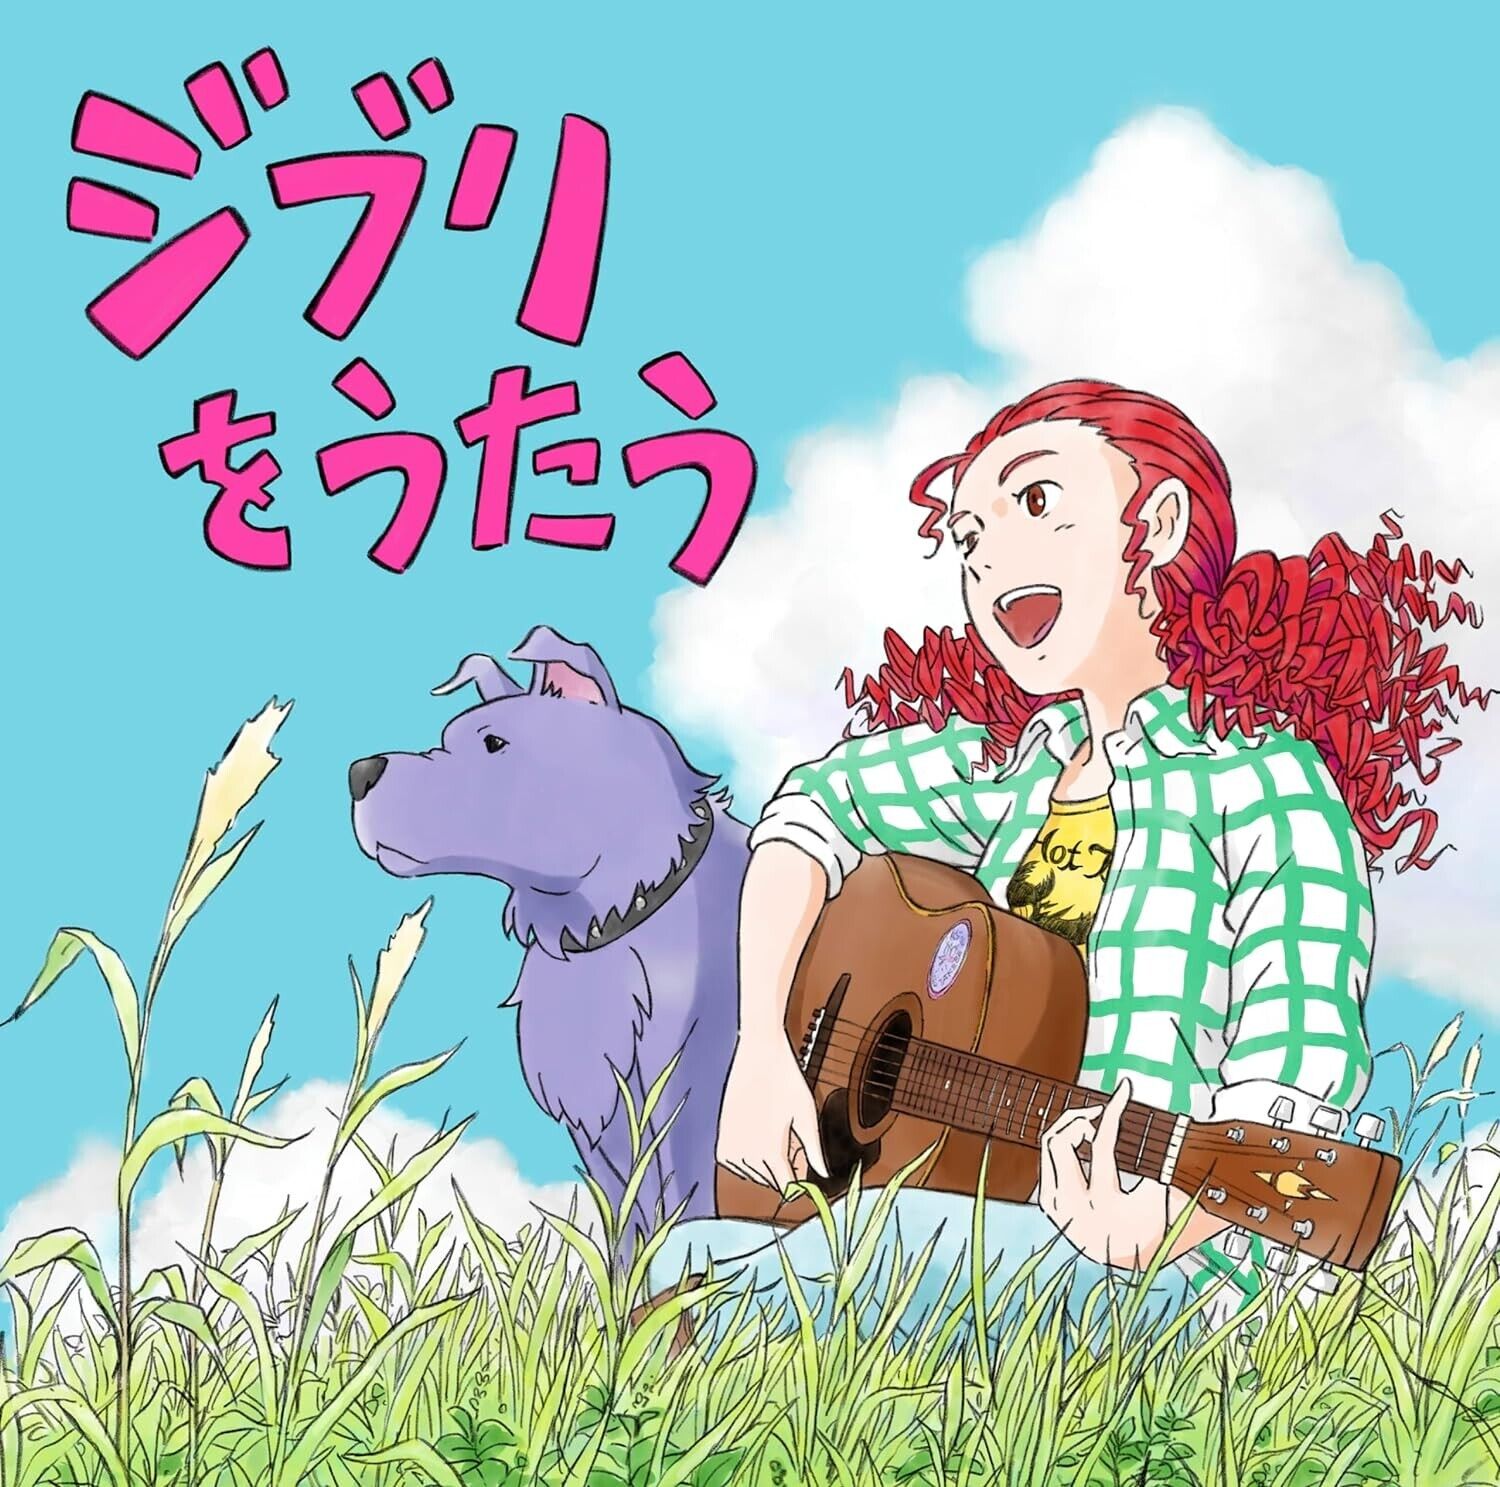 [CD] Studio Ghibli Tribute Album “Singing Ghibli”